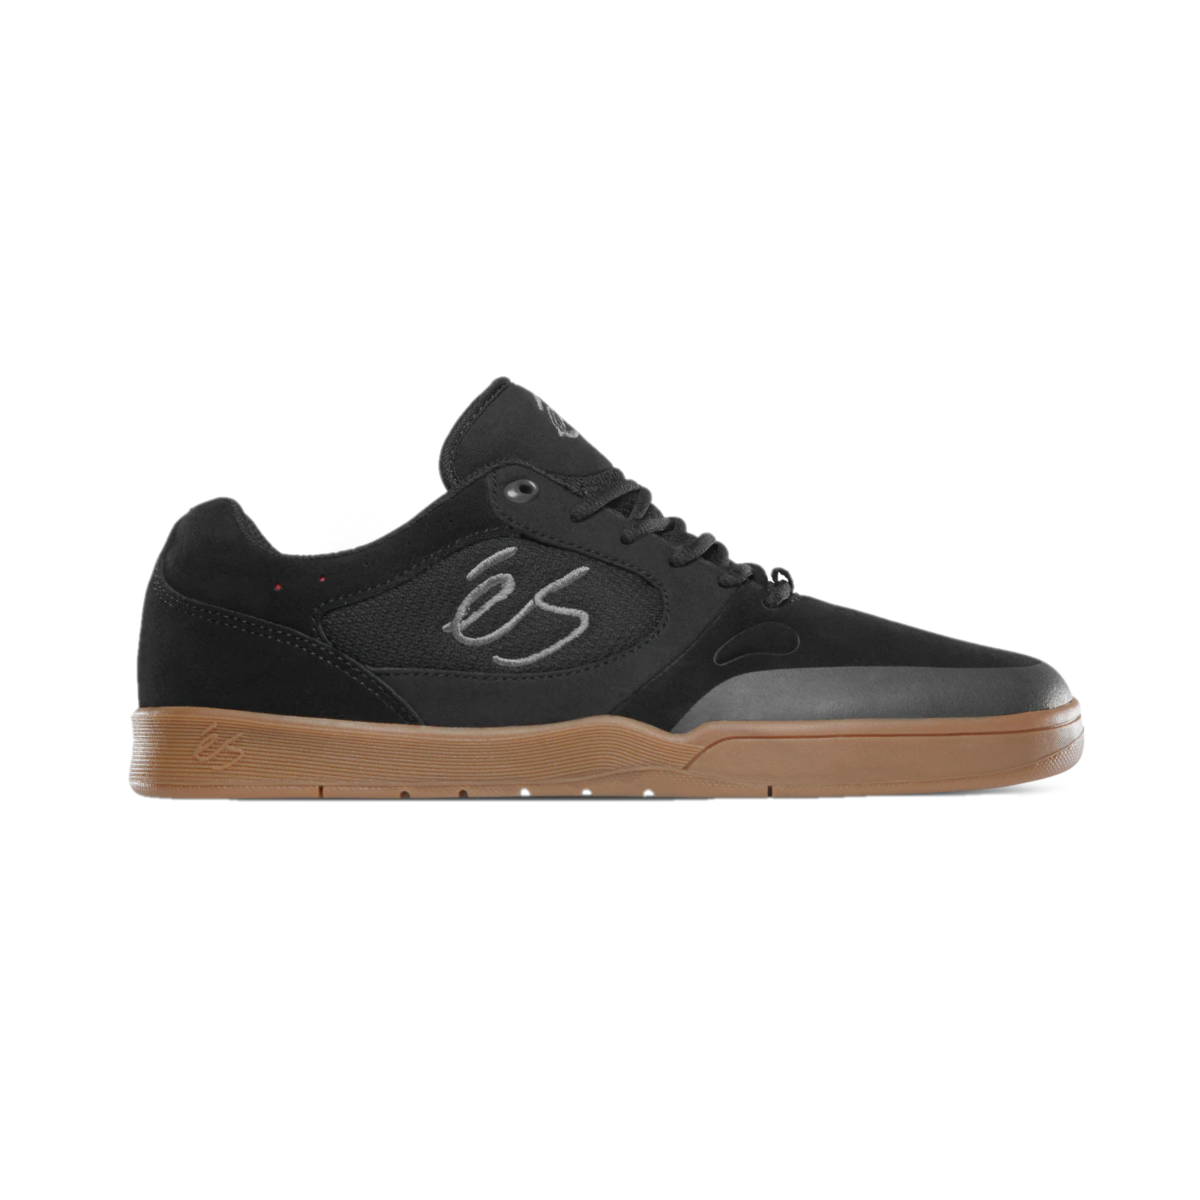 ÉS 5101000158/964 SWIFT 1.5 MN'S (Medium) Black/Gum Suede, Textile & Synthetic Skate Shoes